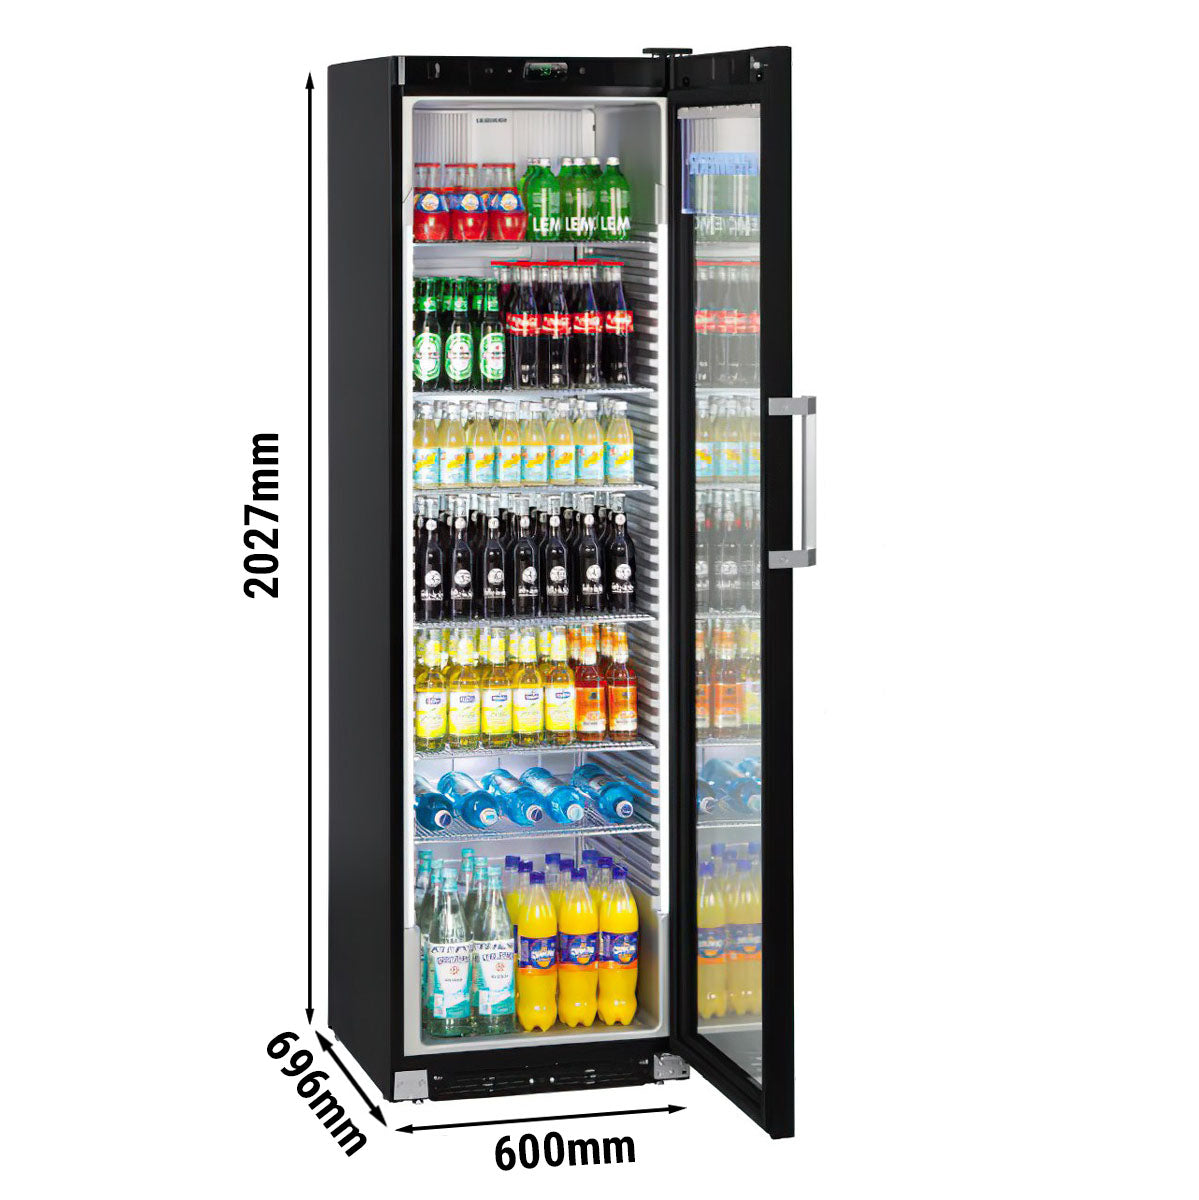 LIEBHERR beverage fridge with display - 0.6 x 0.69 m - with 1 glass door - 441 liters (gross)